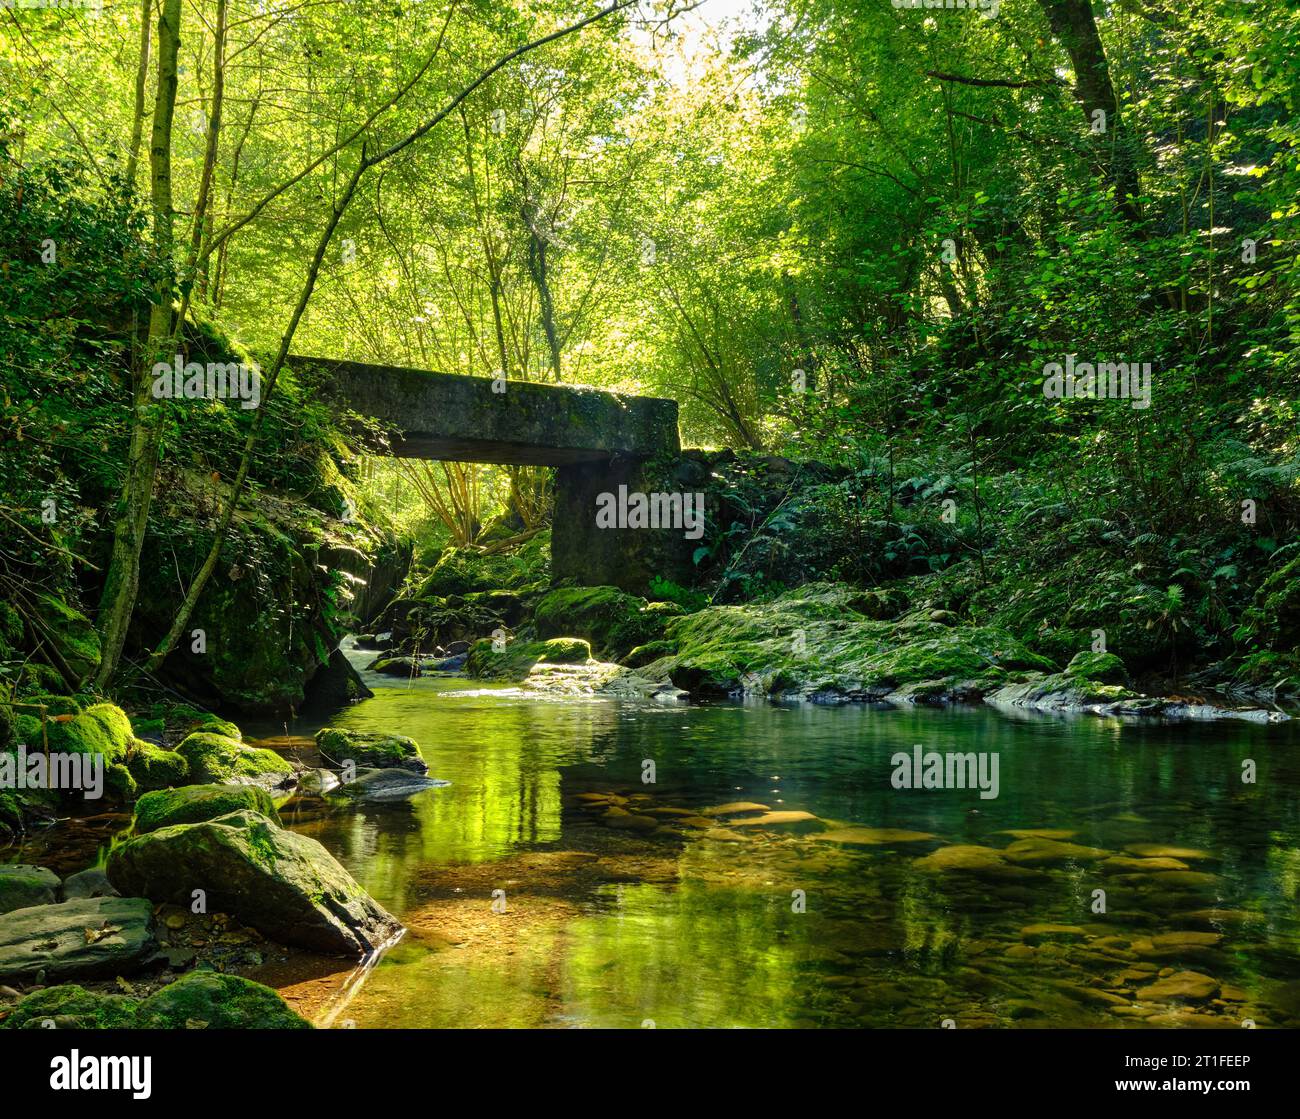 panorama di una foresta verdeggiante, nella foto è possibile vedere un fiume dalle acque calme con un ponte che collega le due sponde, tonalità verde e giallo con c Foto Stock